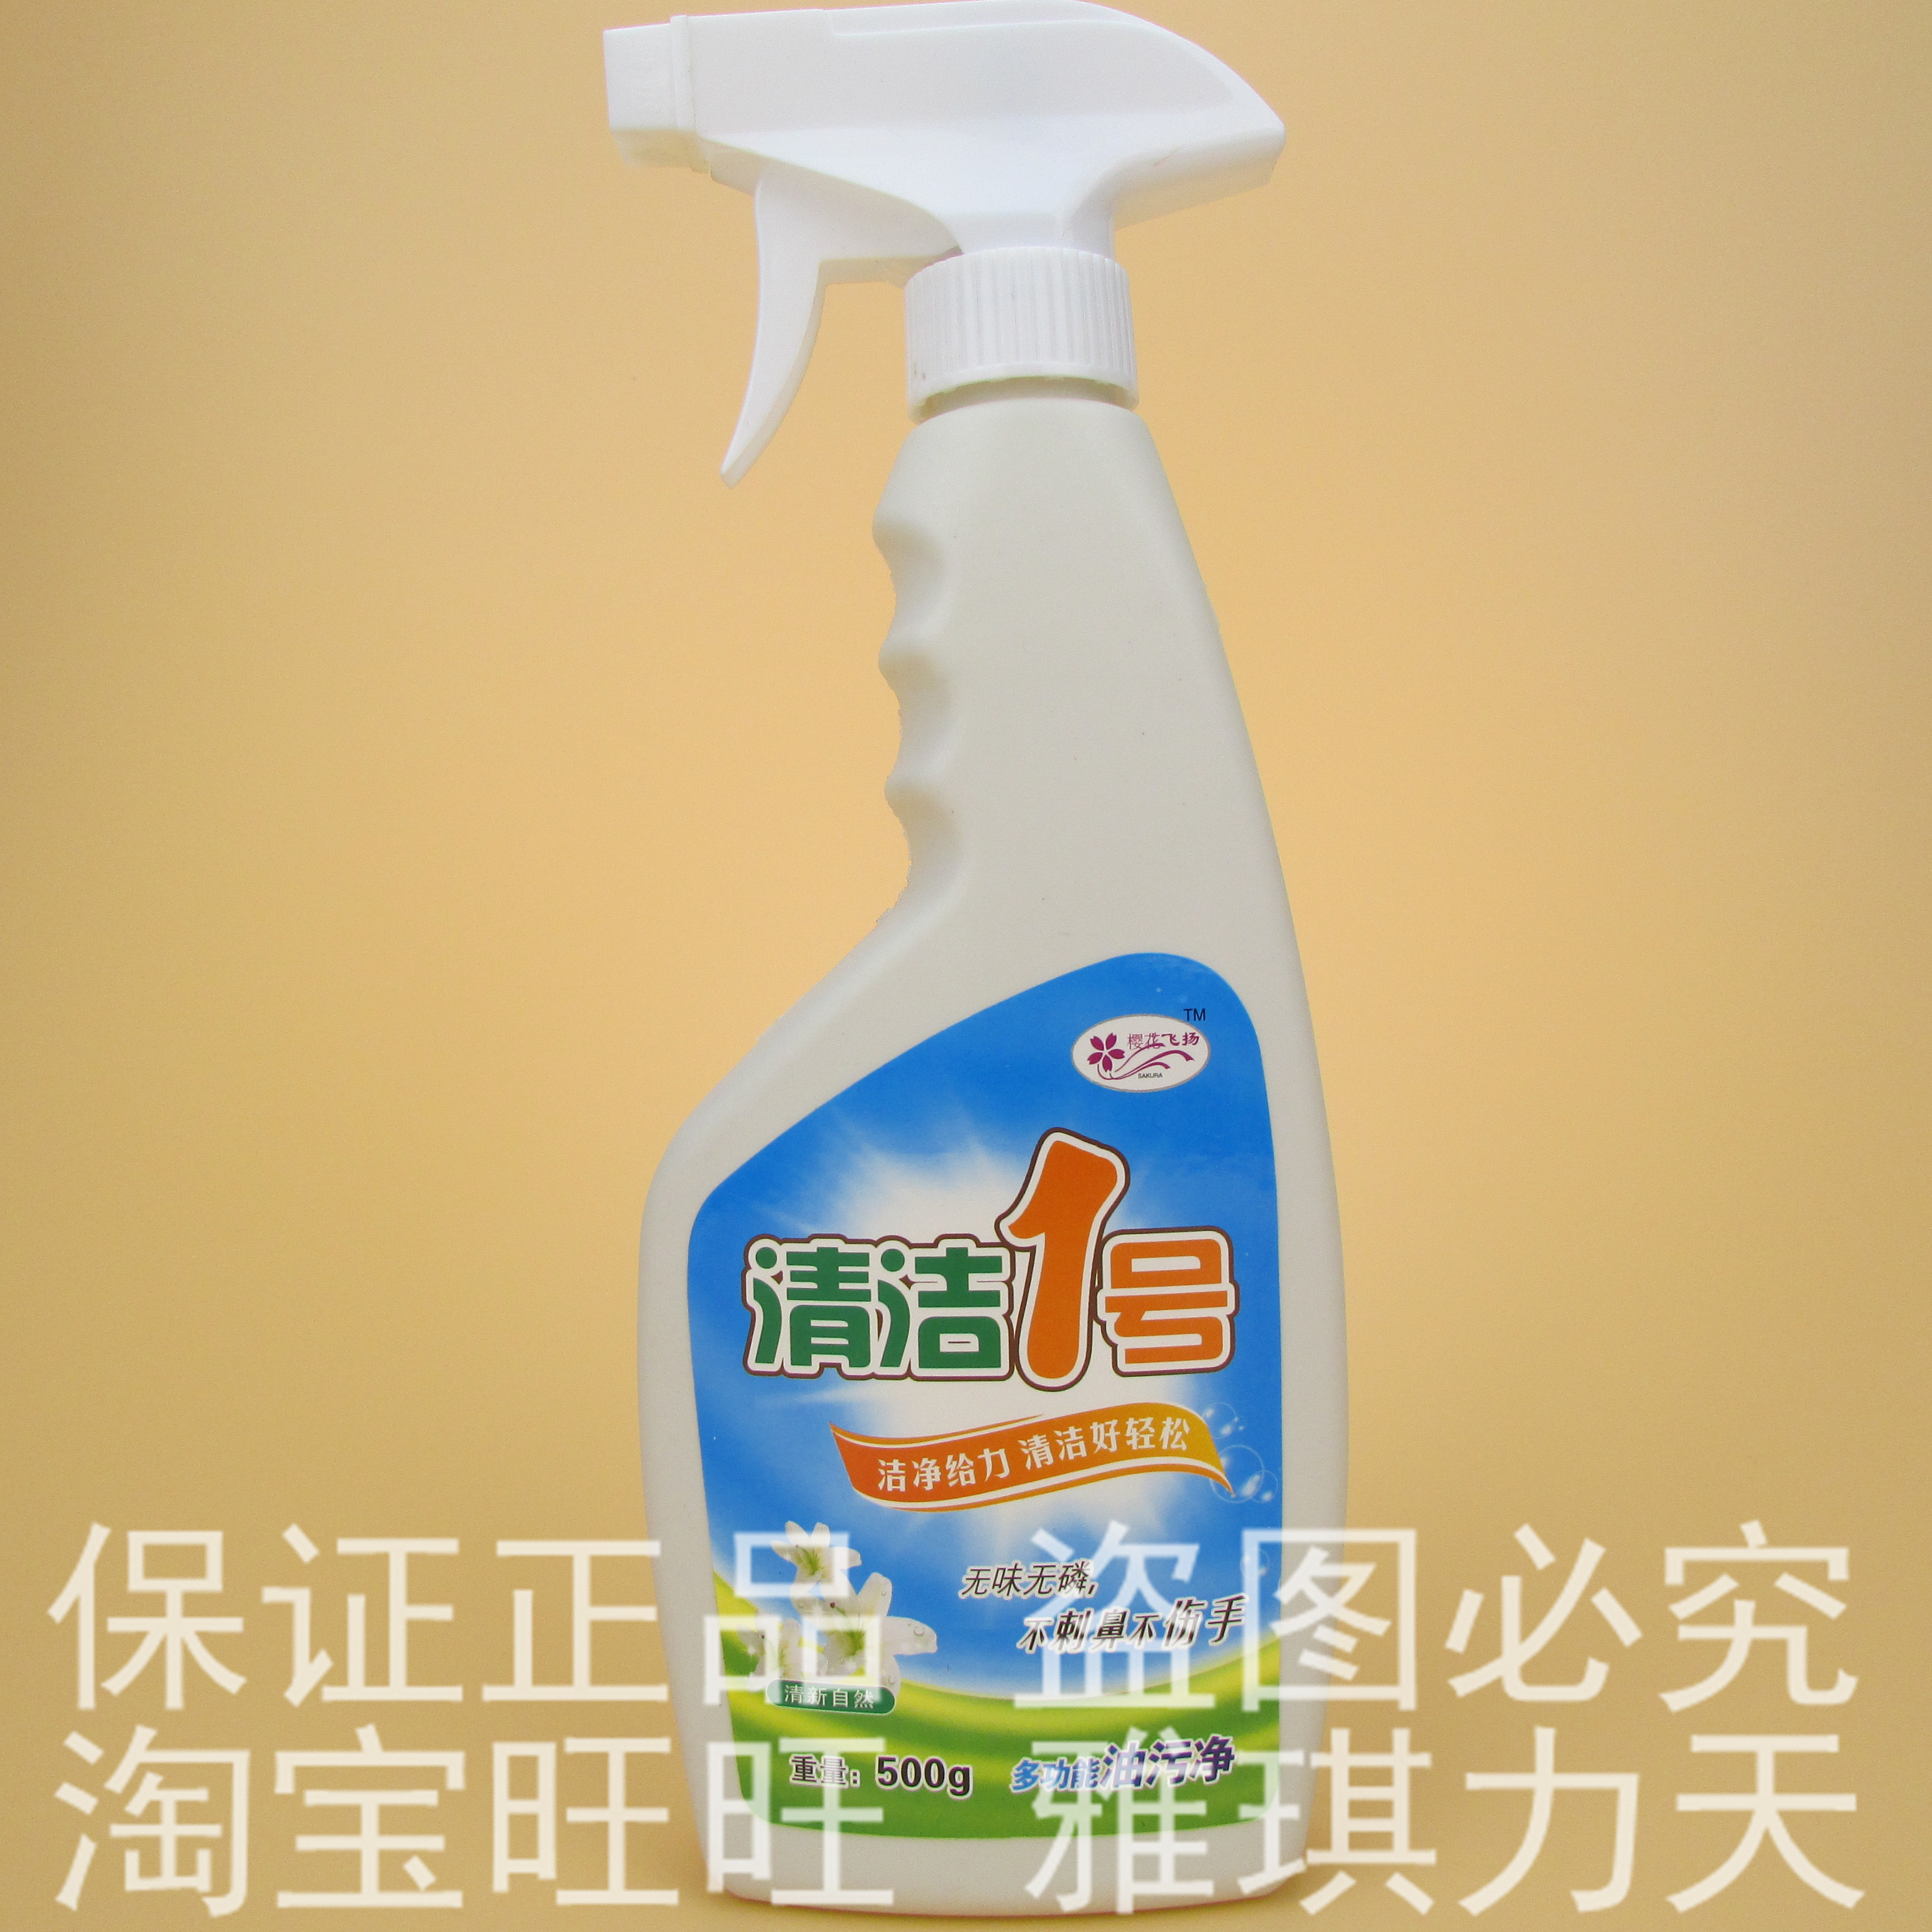 【官方直销】 清洁1号多功能油污净 清洁剂 清洗剂 单瓶装